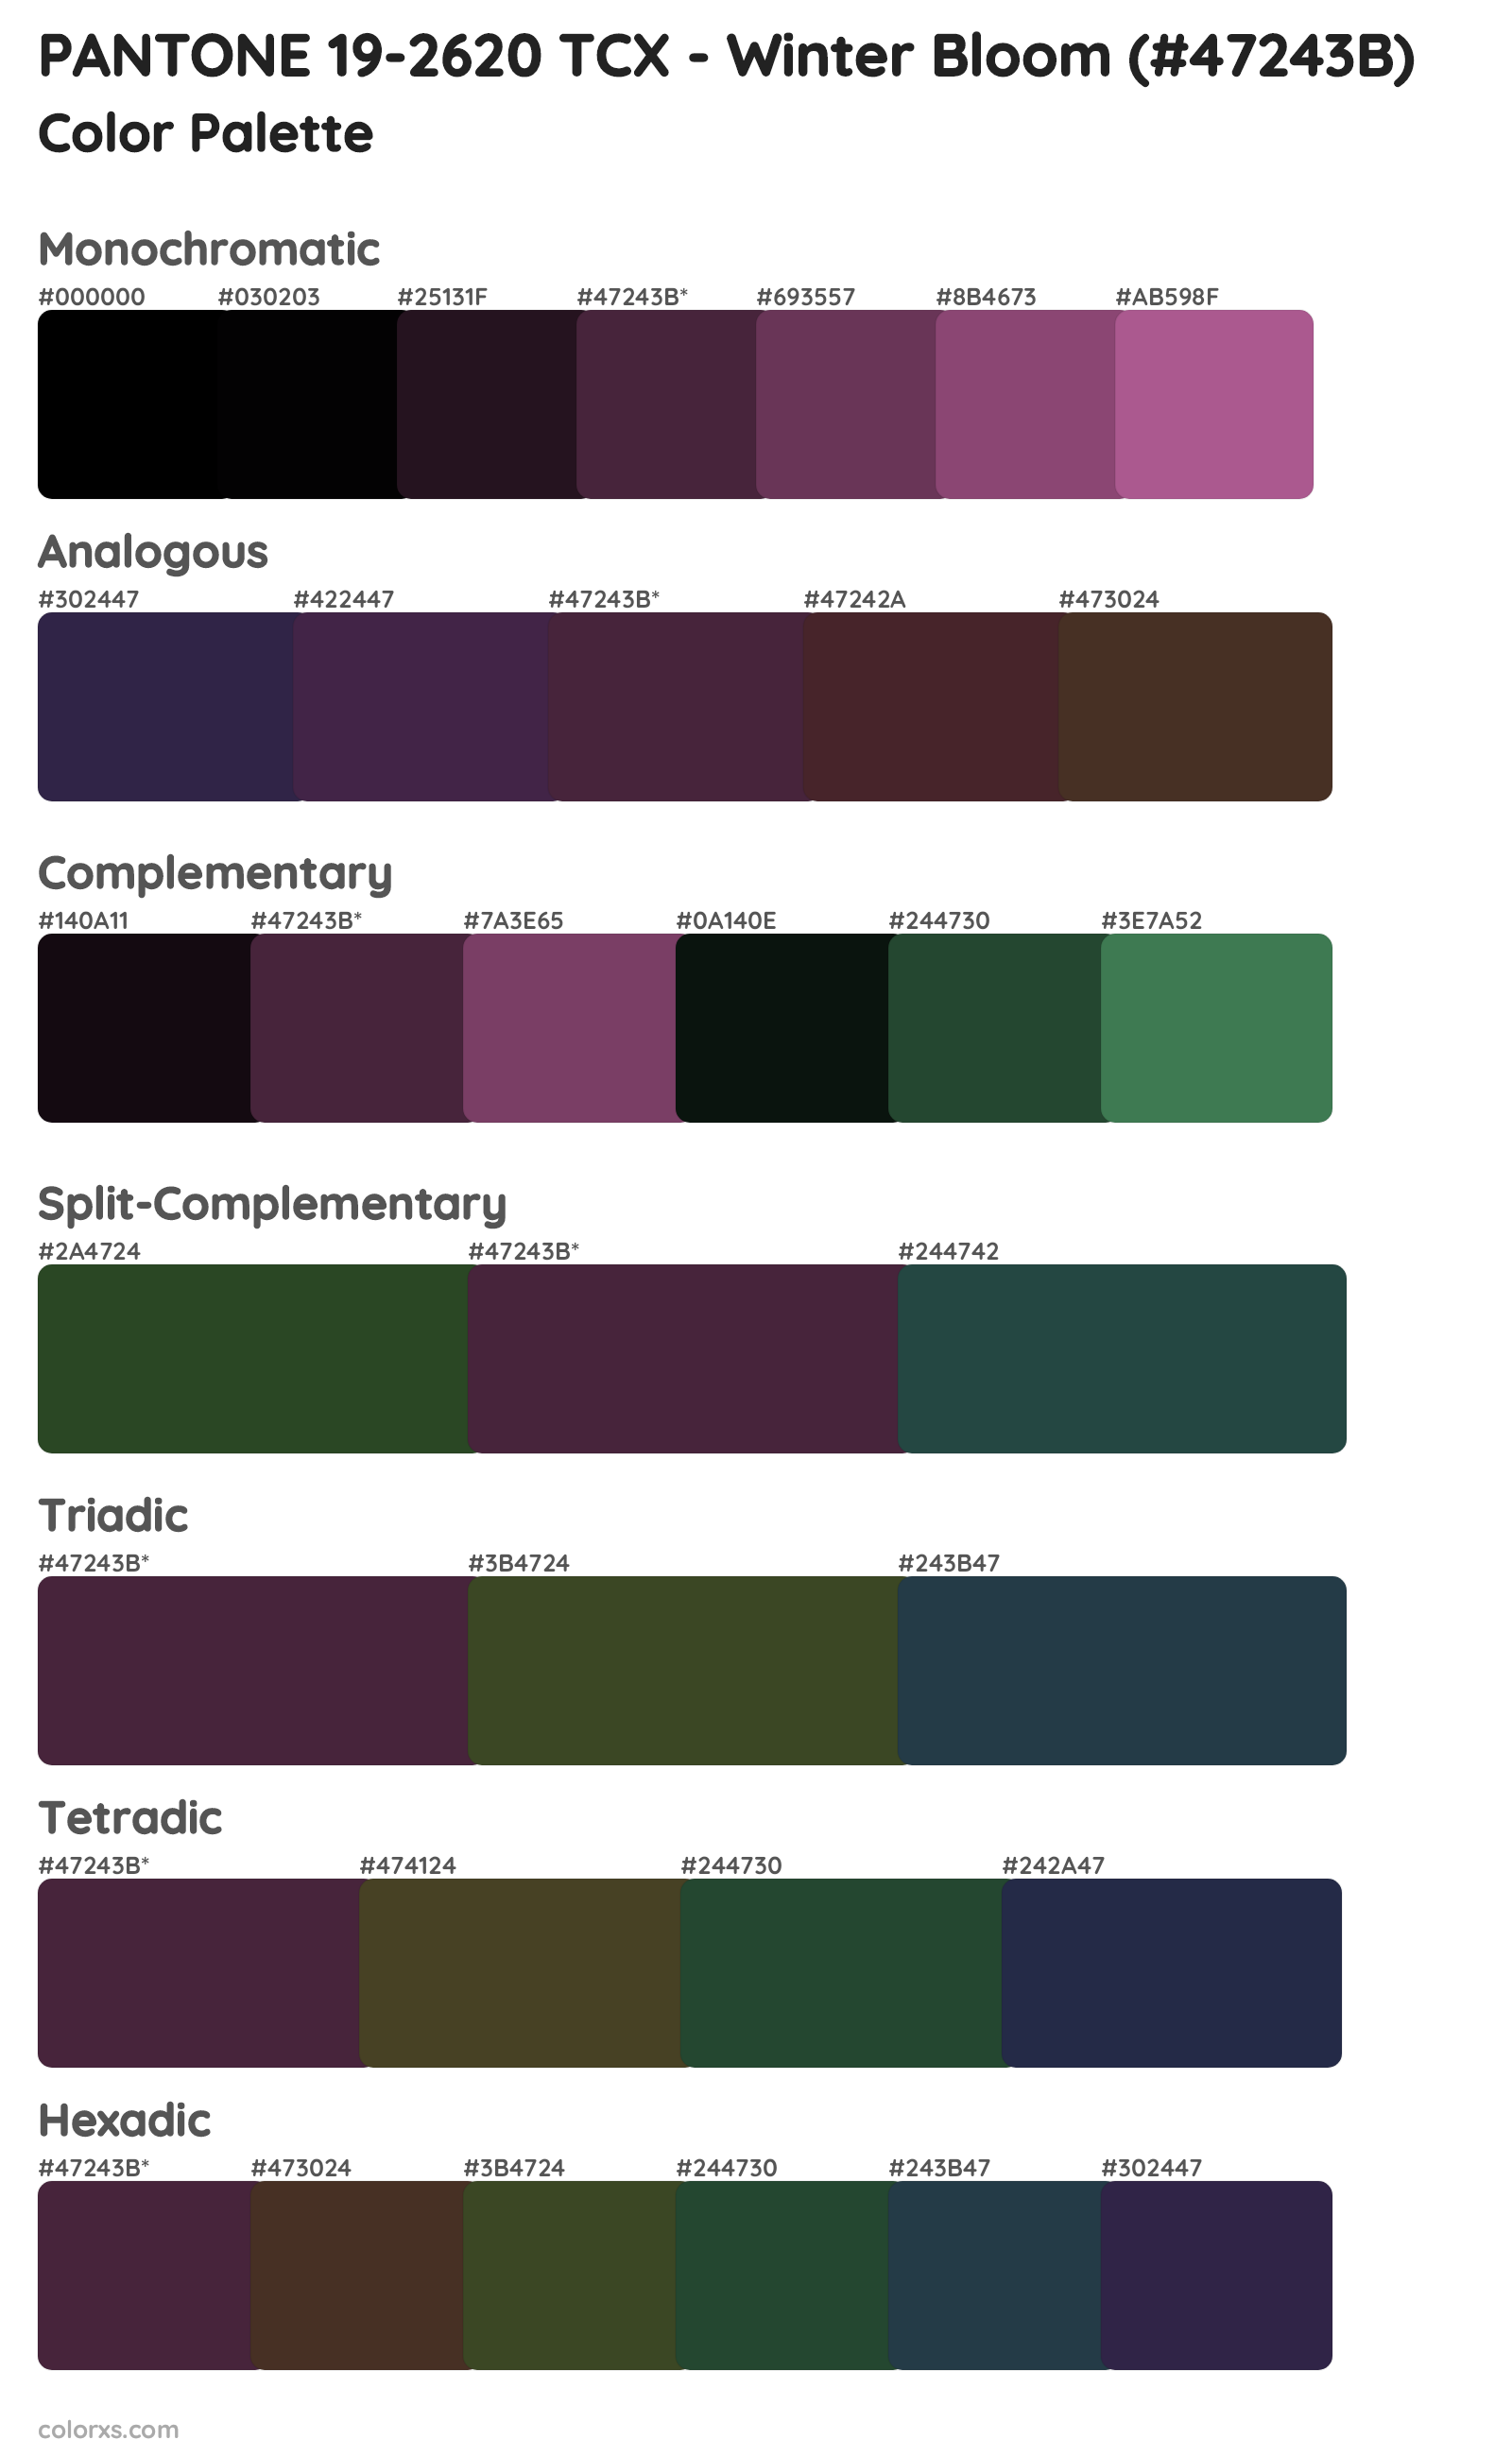 PANTONE 19-2620 TCX - Winter Bloom Color Scheme Palettes